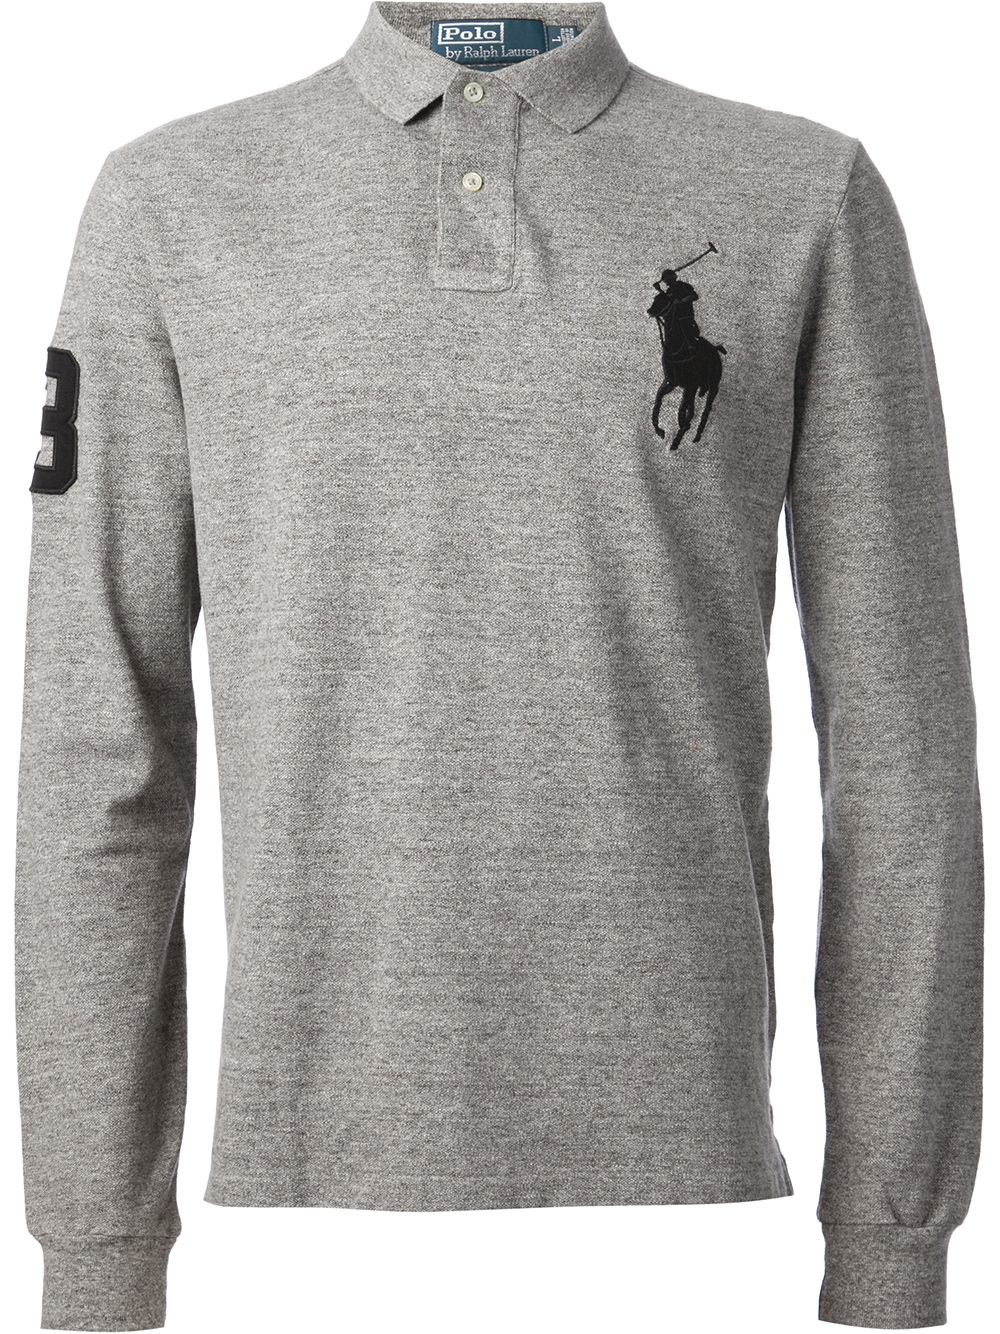 grey ralph lauren polo shirt